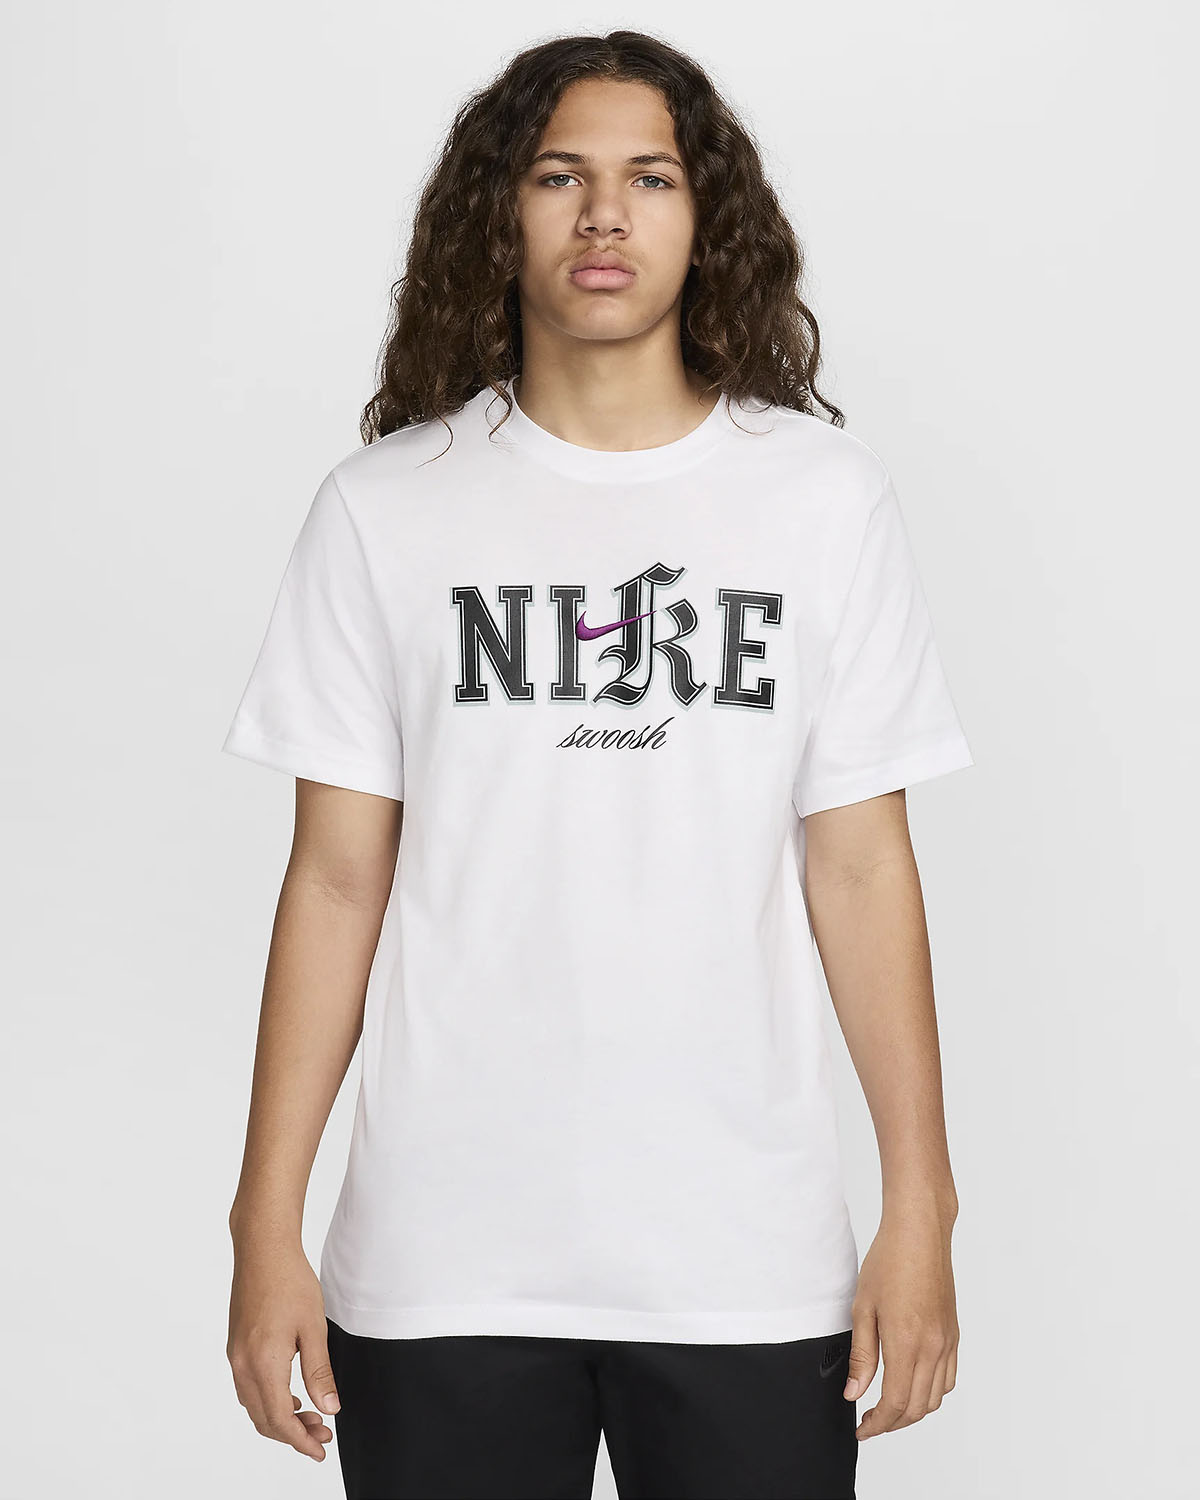 Nike Sportswear T Shirt White Black Viotech 1